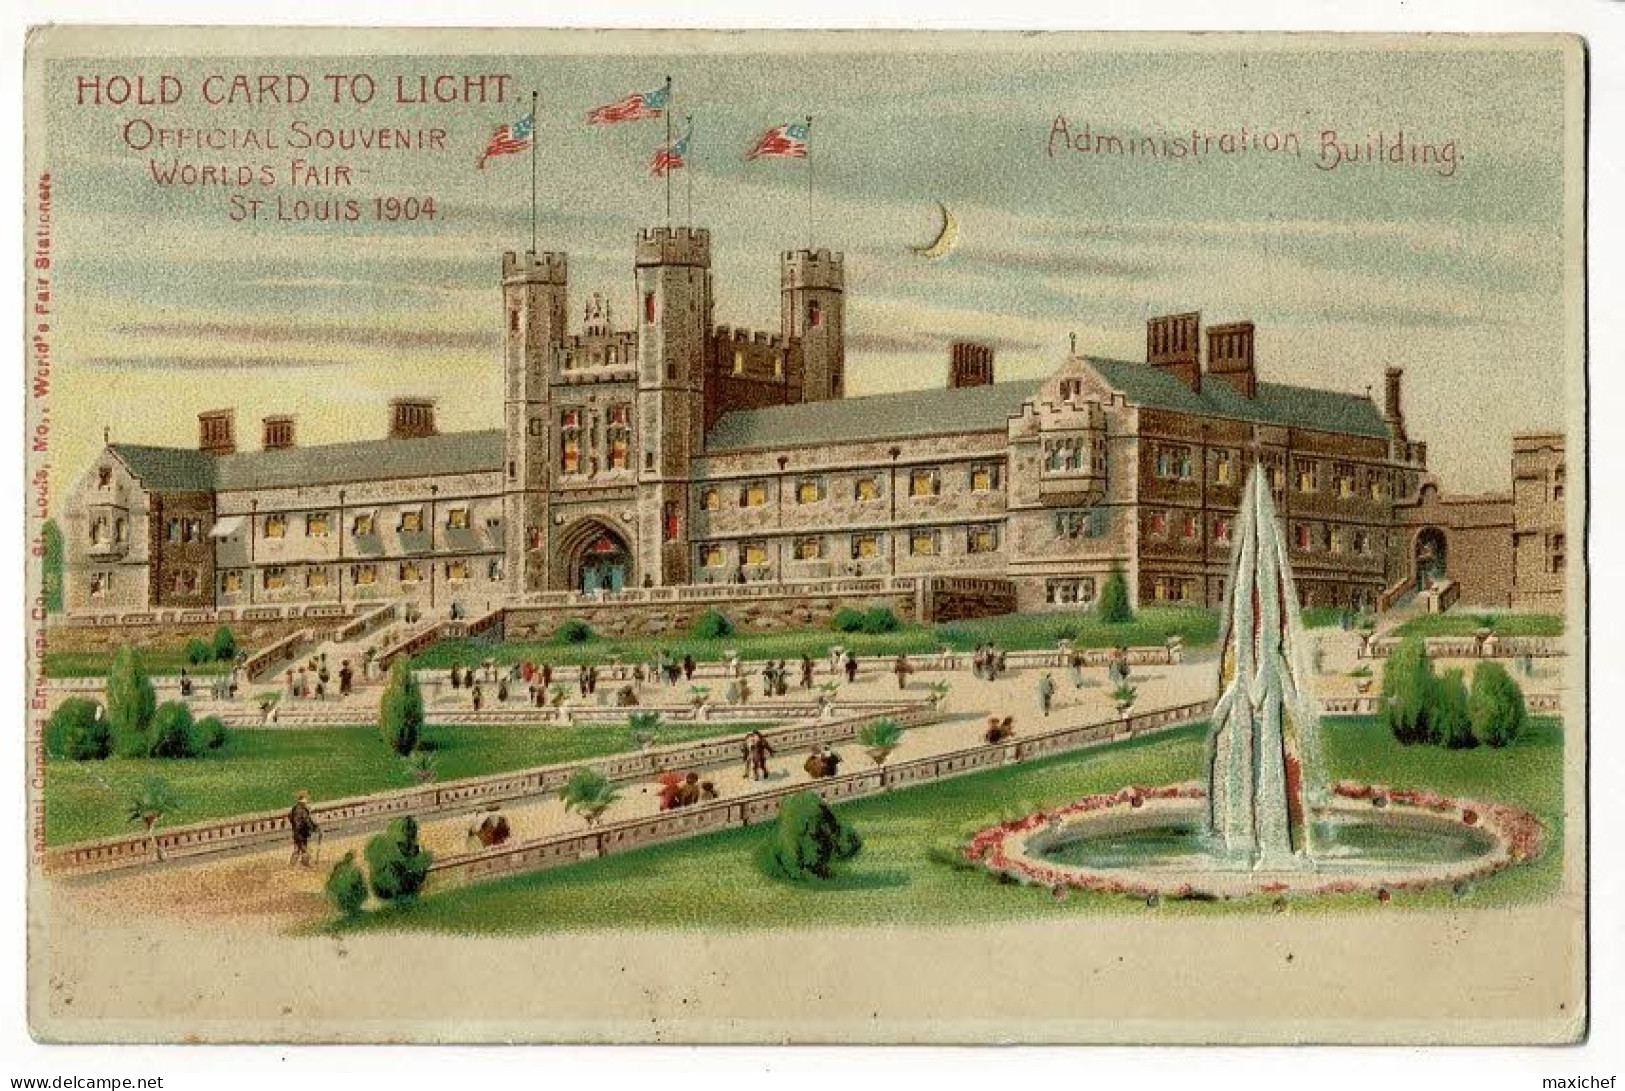 Carte Illustrée Hold Card To Light - Official Souvenir Worlds Fair St Louis 1904 - Administration Building - Pas Circulé - Contre La Lumière